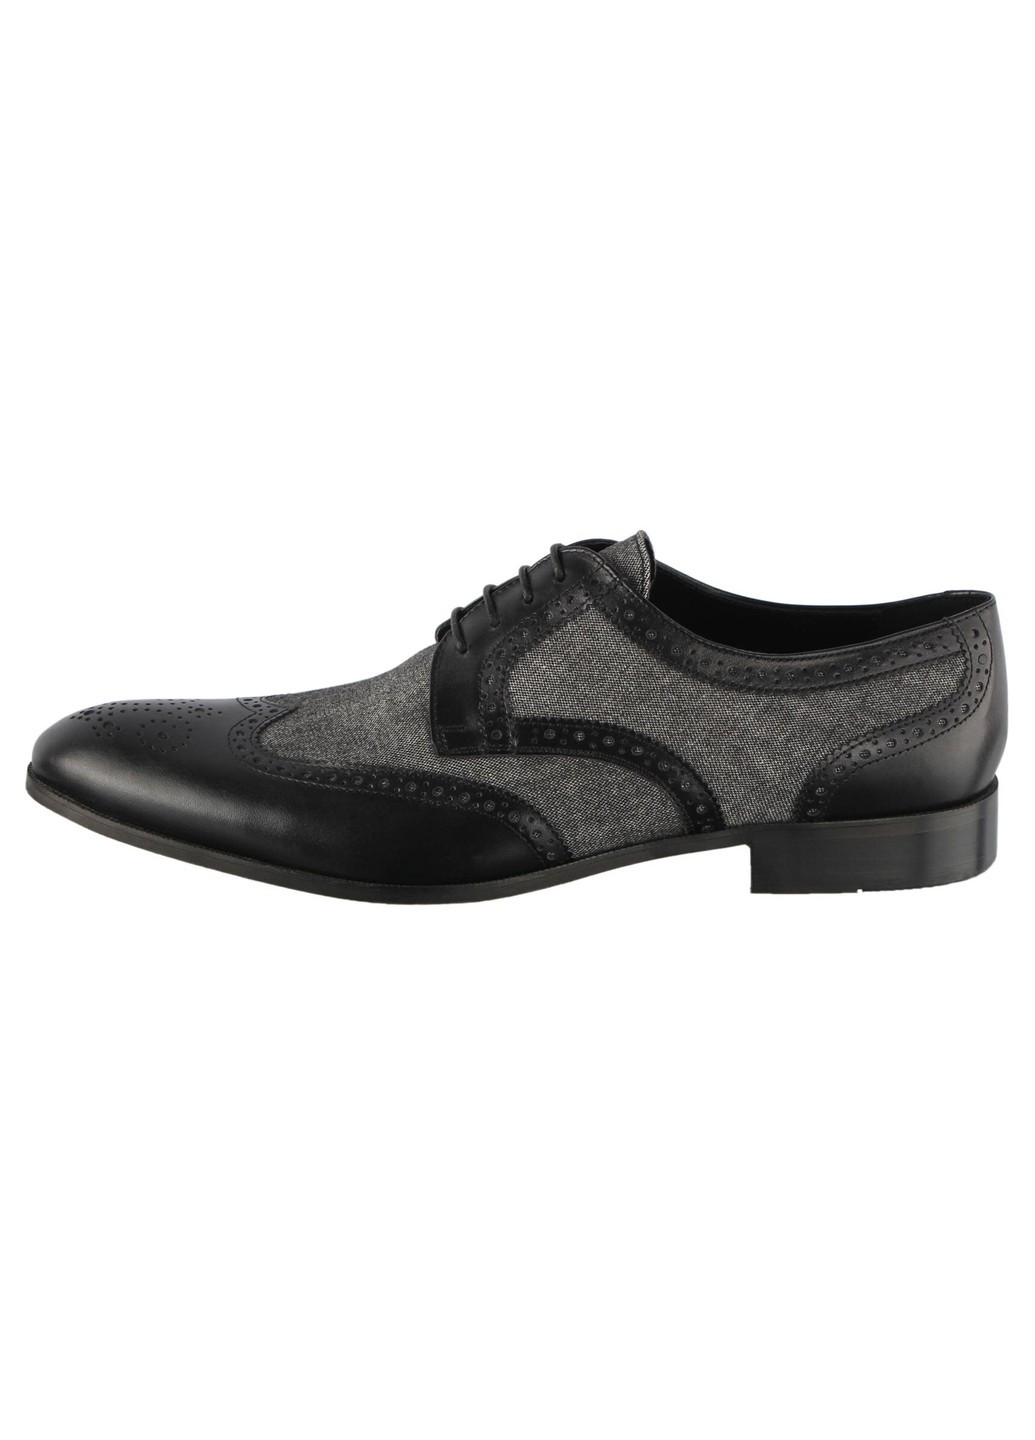 Черные мужские классические туфли 5653 Conhpol на шнурках